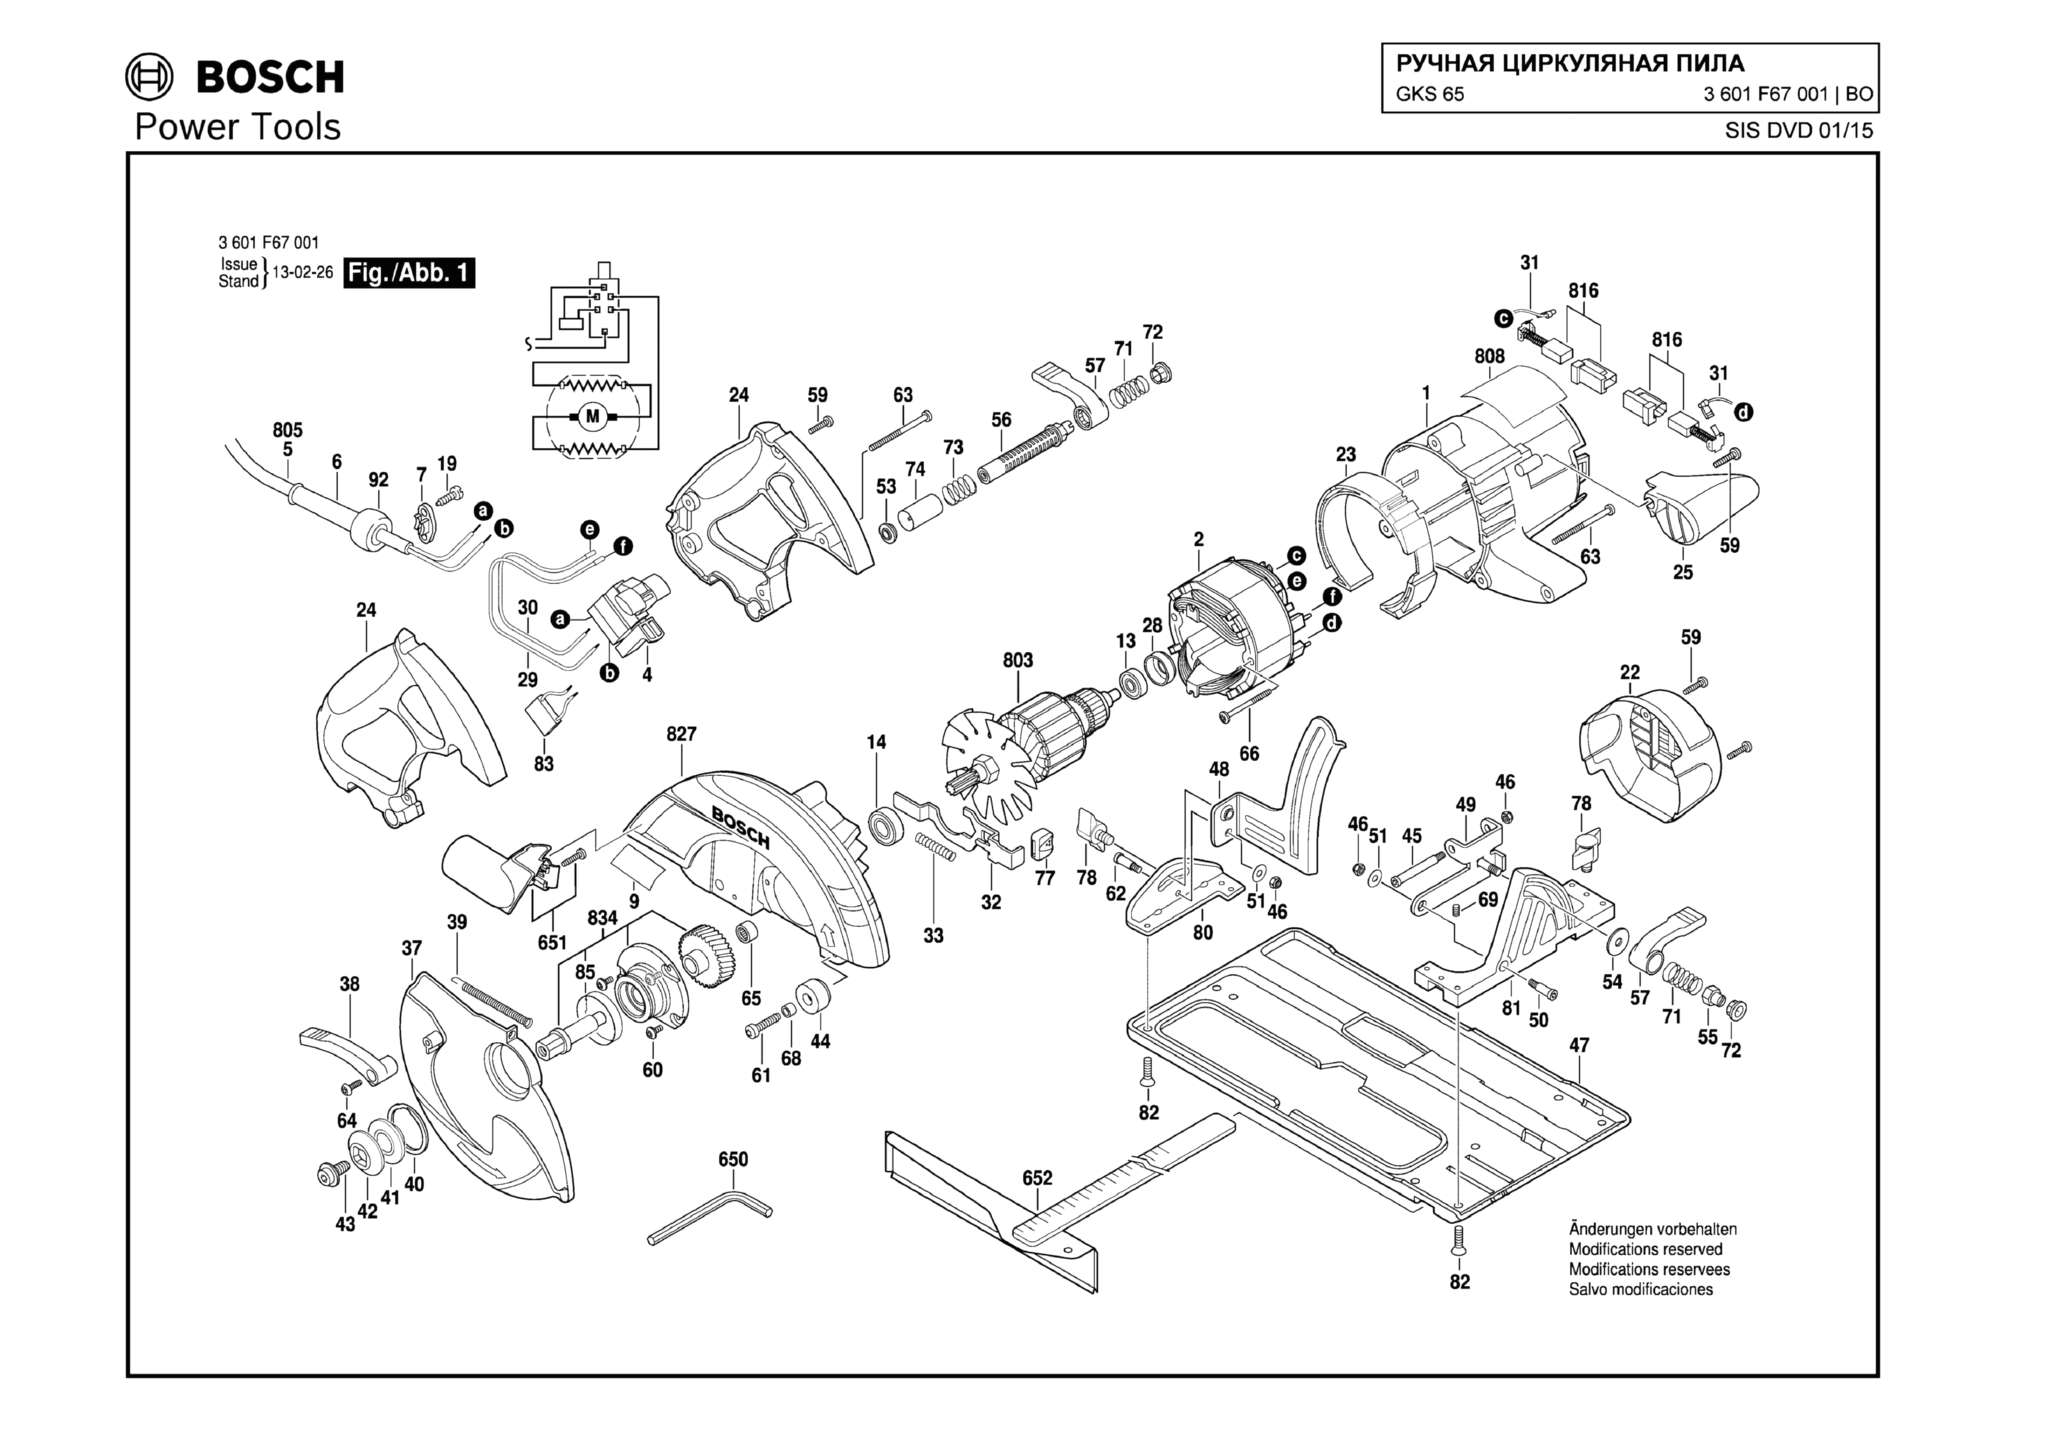 Запчасти, схема и деталировка Bosch GKS 65 (ТИП 3601F67001)